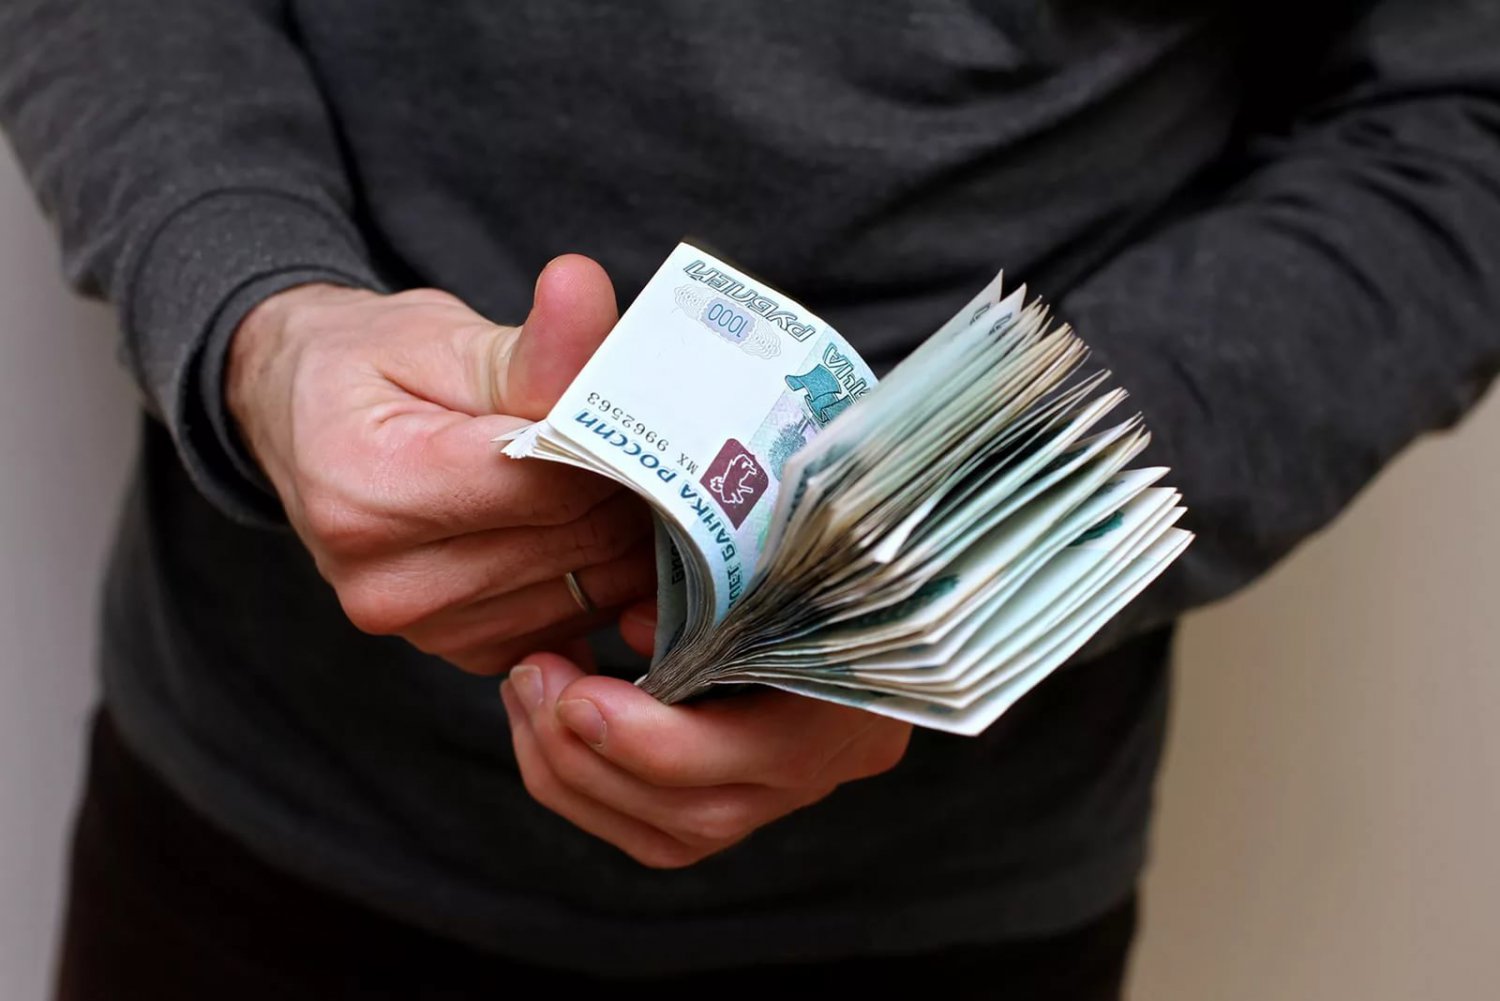 Начальник незаконно оштрафовал сотрудника на 15 тысяч рублей